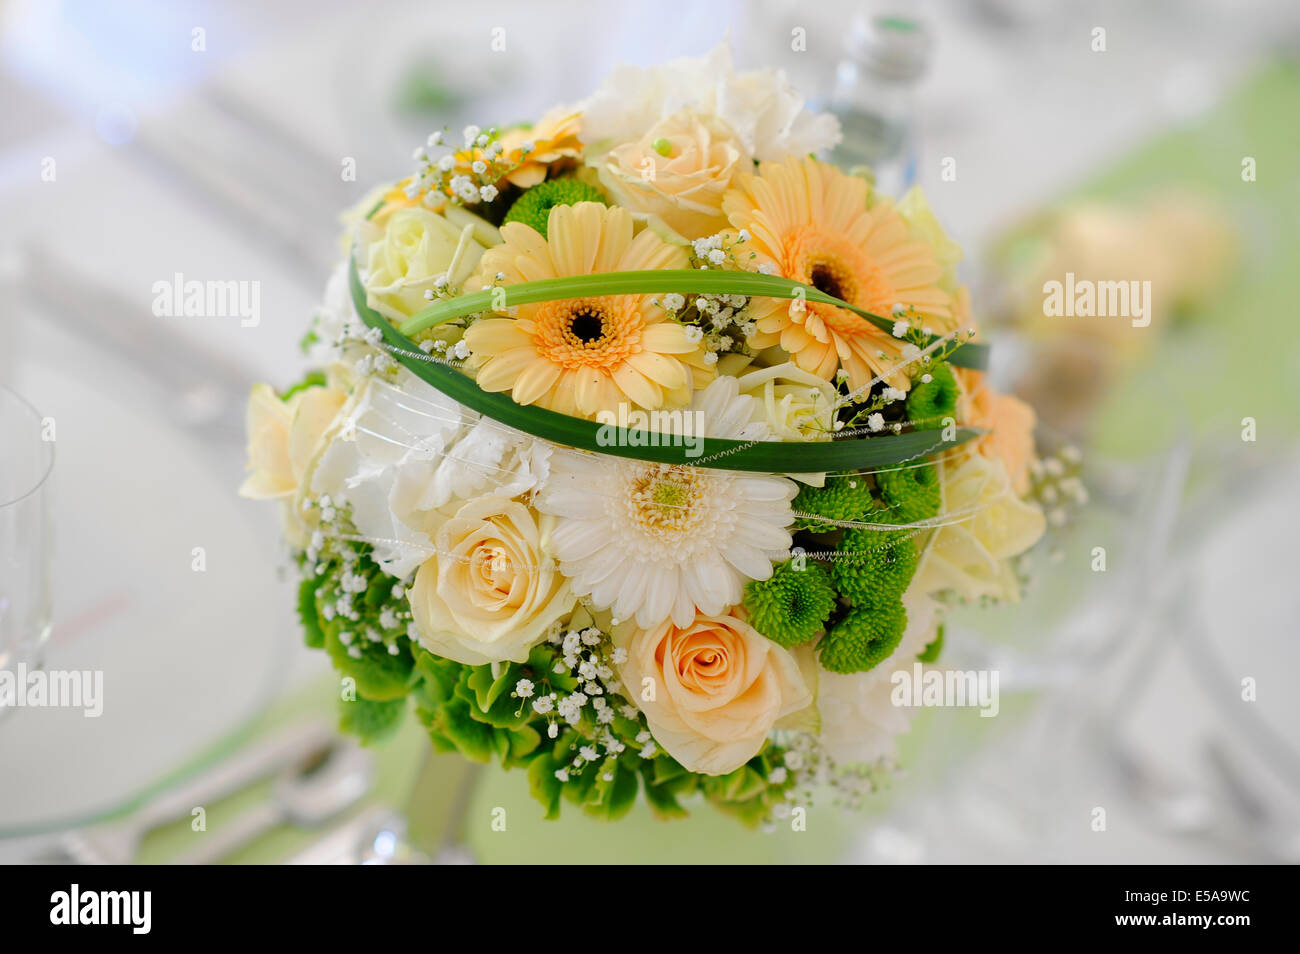 Decorazioni per la tavola di una tabella di nozze con bouquet di nozze Foto Stock